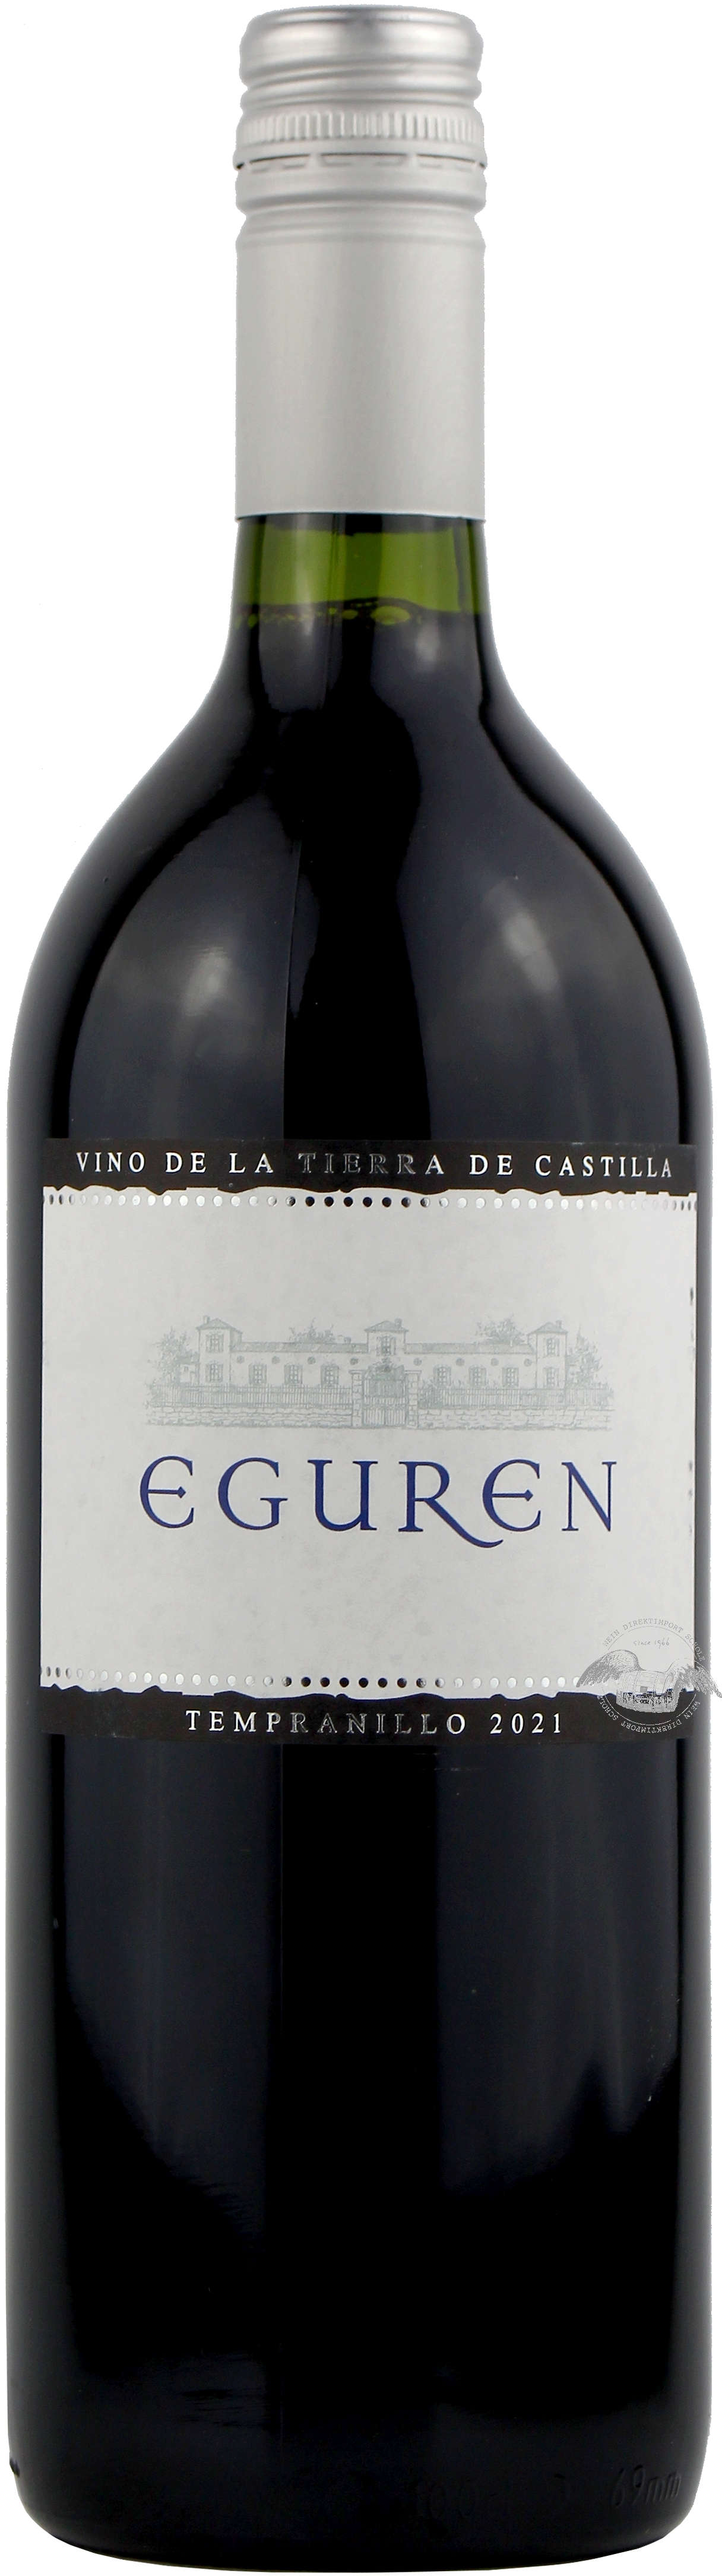 Bodegas Eguren, 2021 Tempranillo Literflasche, Rotwein, Kastilien, Spanien  | Wein Direktimport Scholz